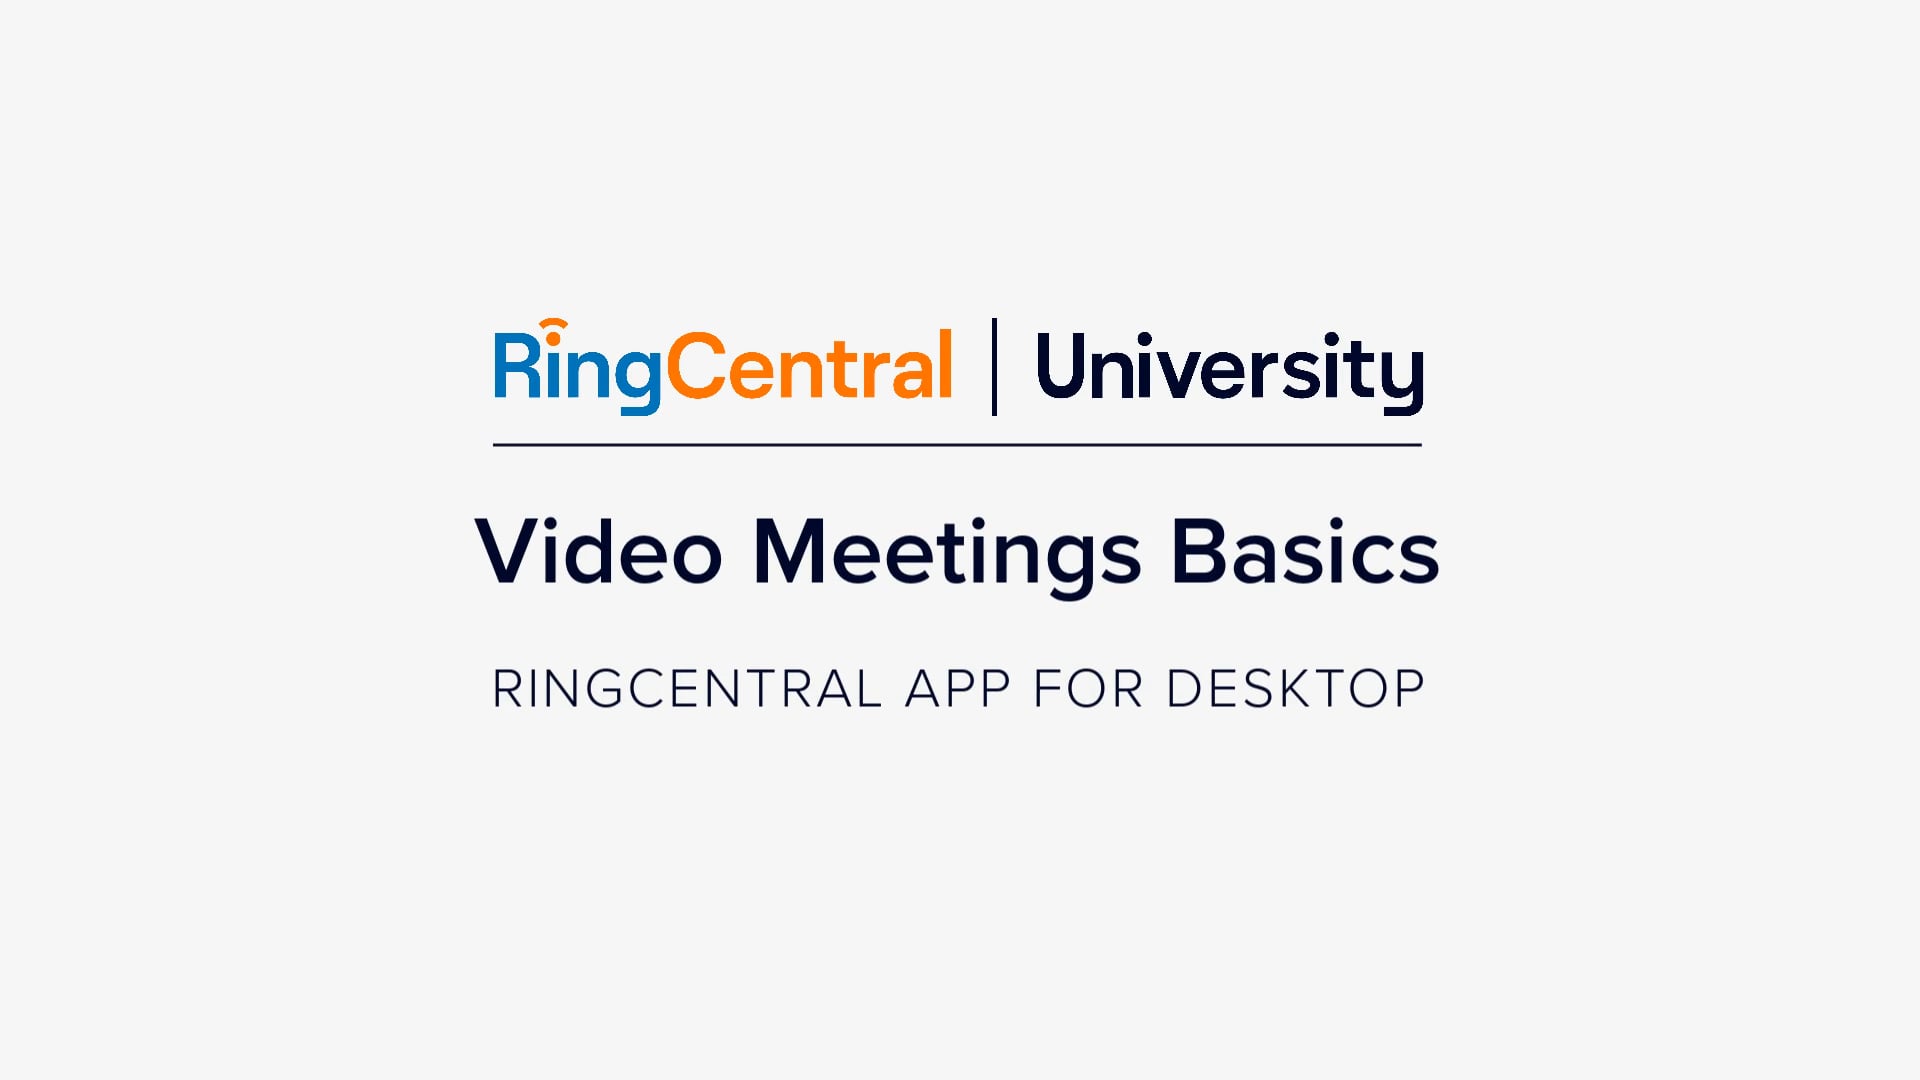 RingCentral App for Desktop: Video Meetings Basics